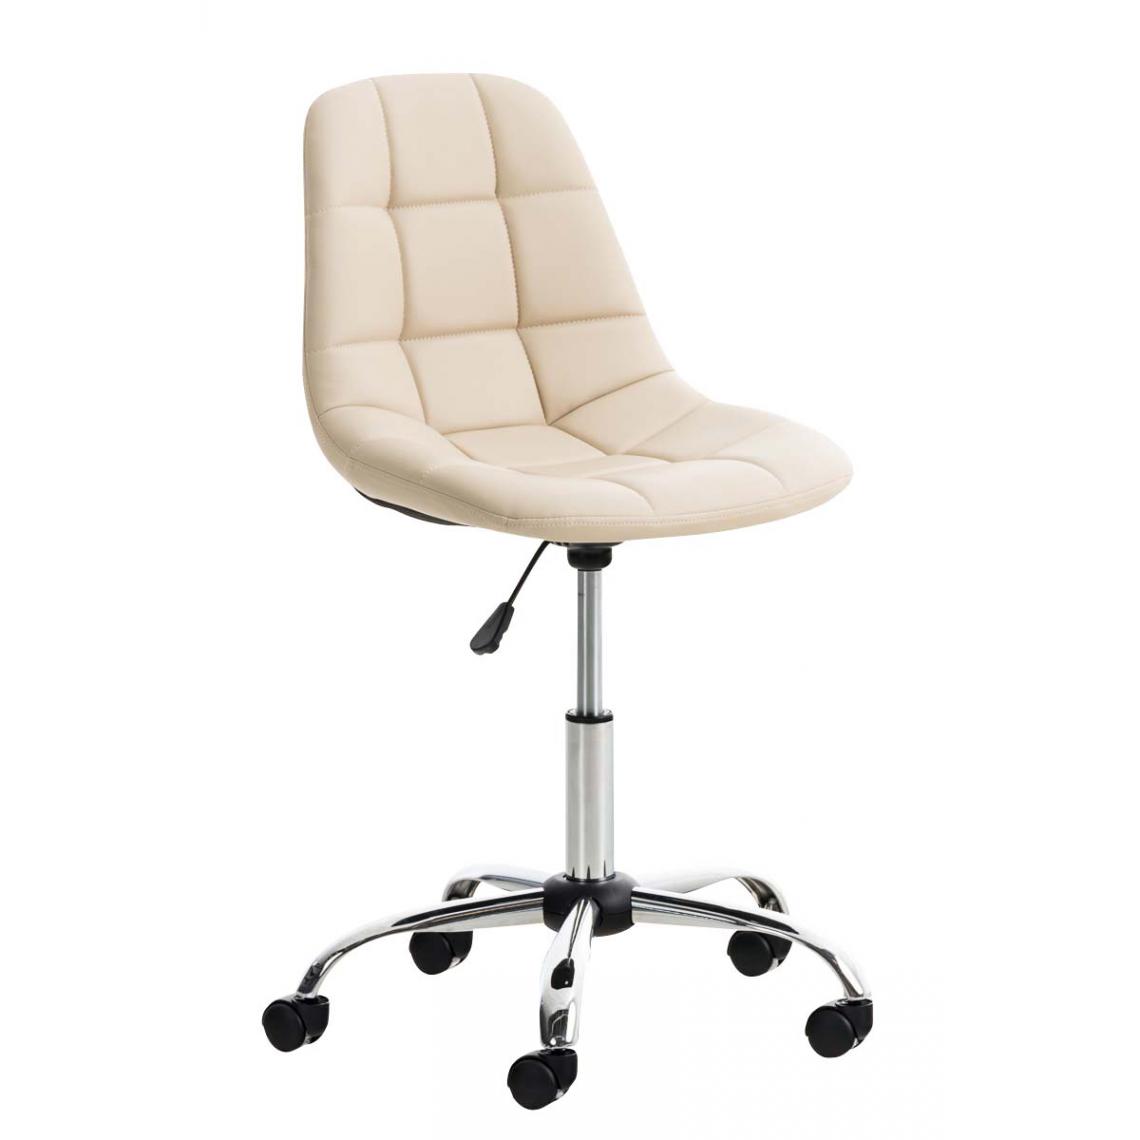 Icaverne - Moderne Chaise de bureau categorie Sanaa en similicuir couleur crème - Chaises